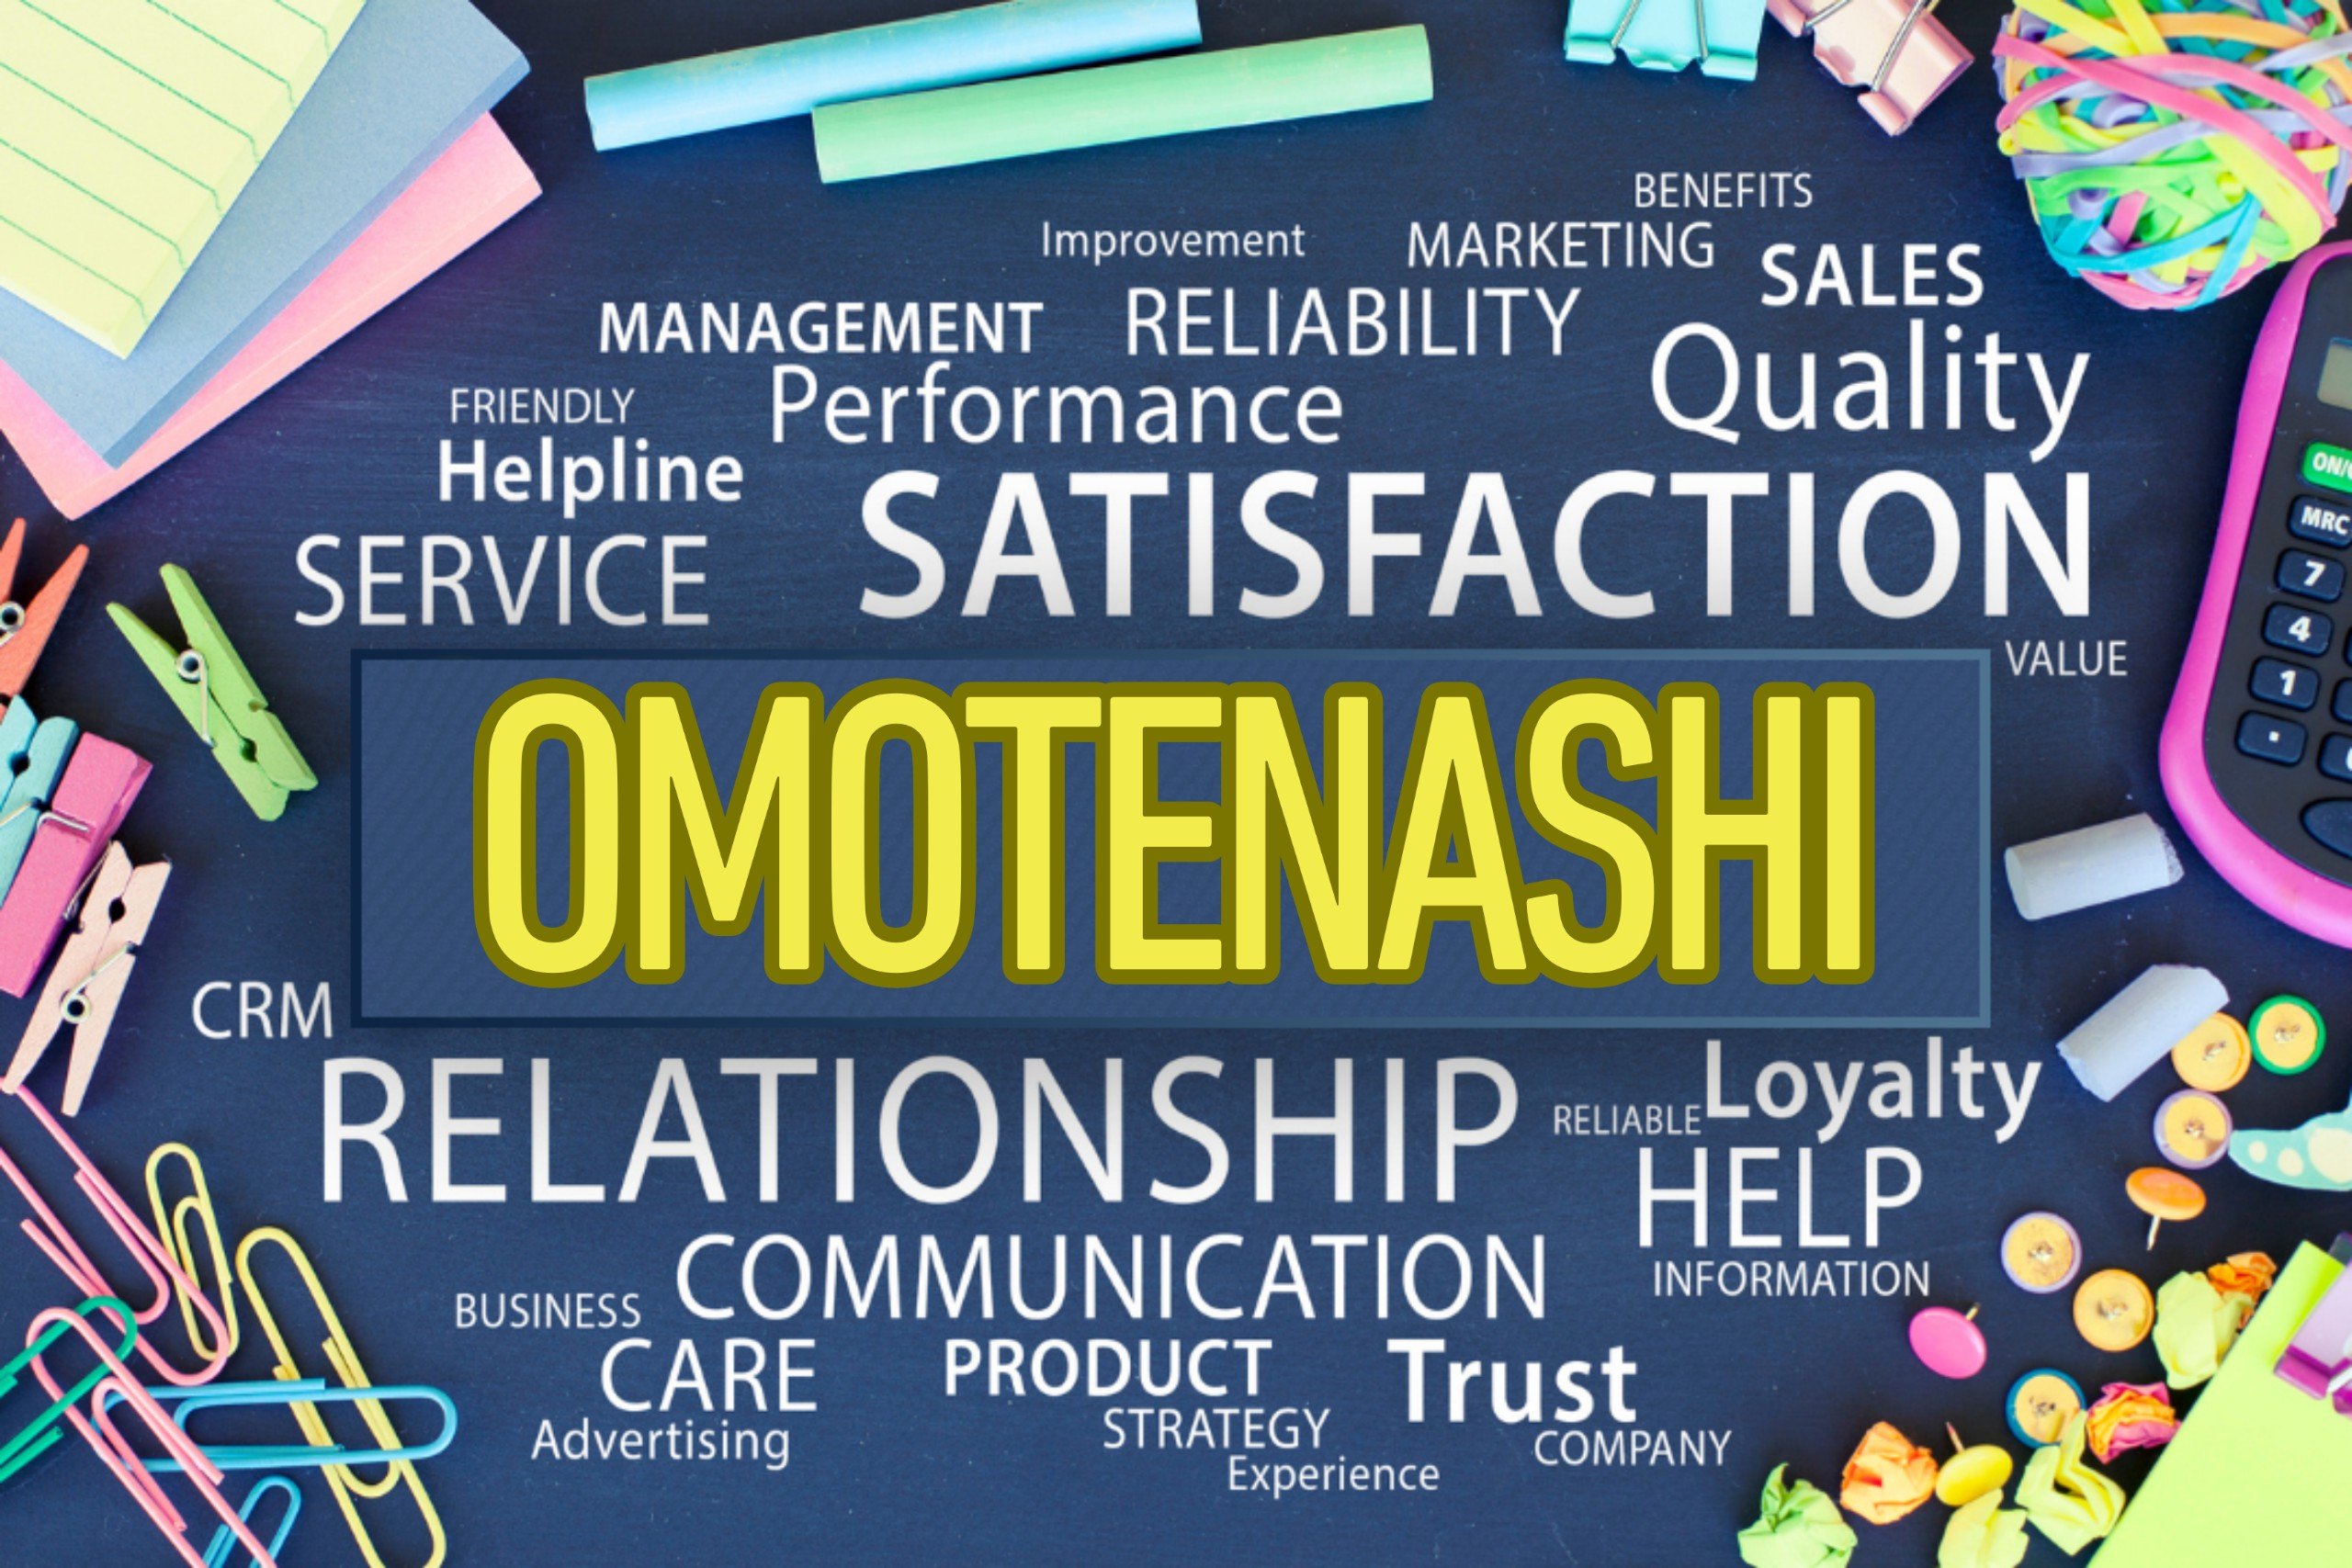 CSO: Chinh phục sự hài lòng khách hàng với Omotenashi